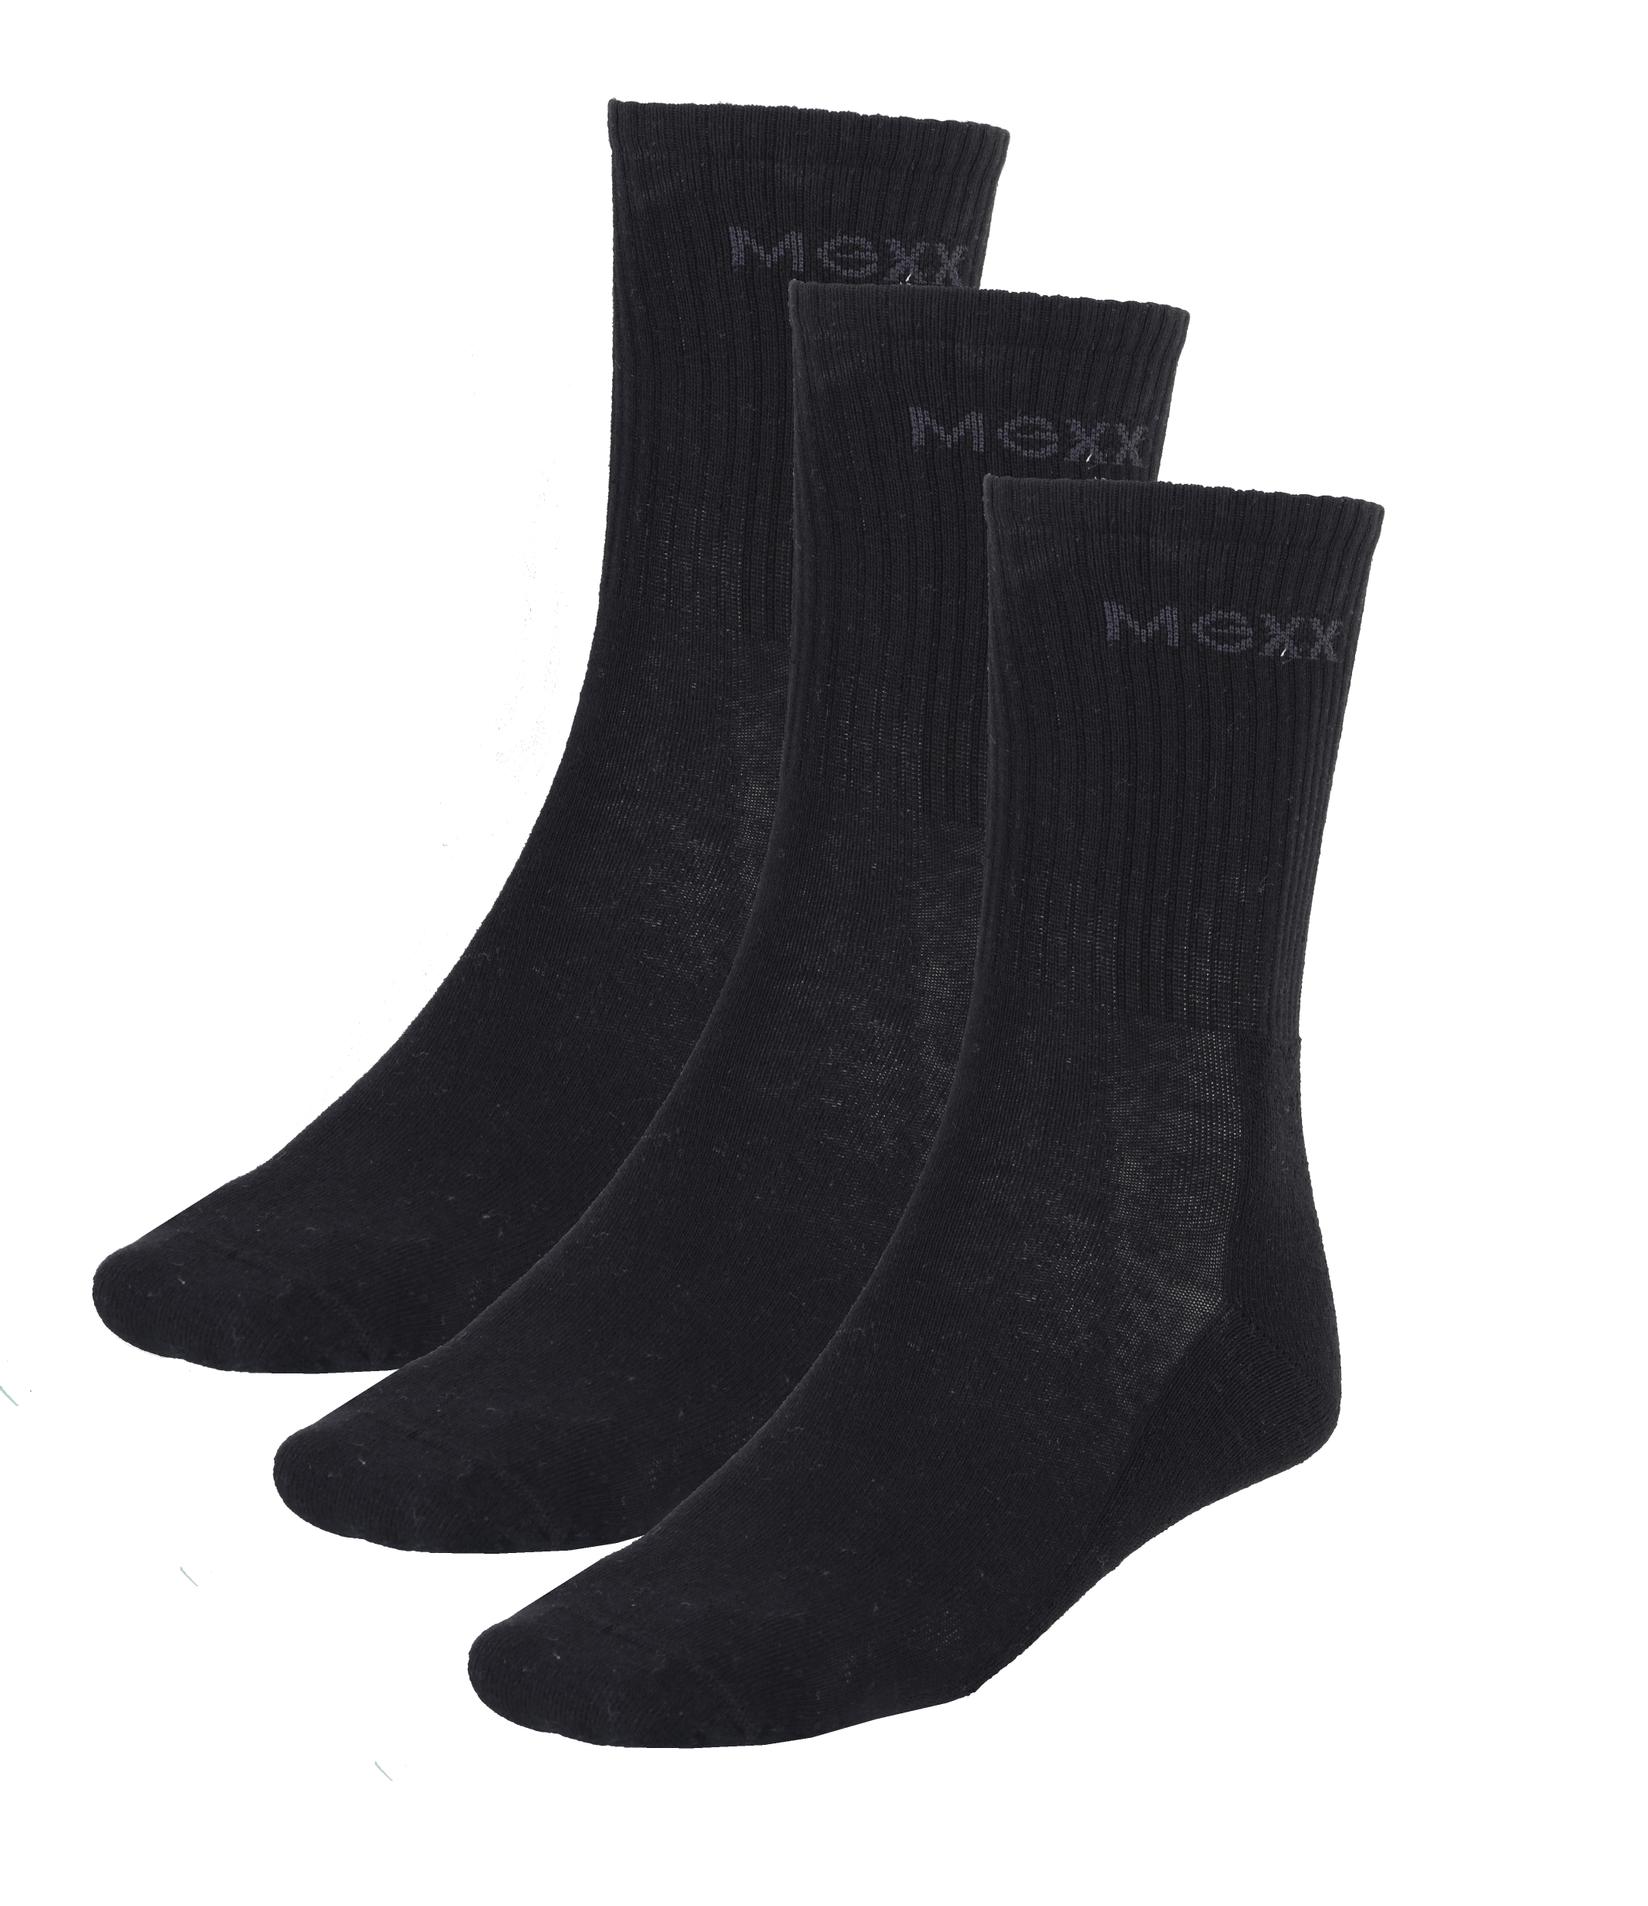 Selected image for MEXX Sportske čarape, Pakovanje od 3 para, Crne